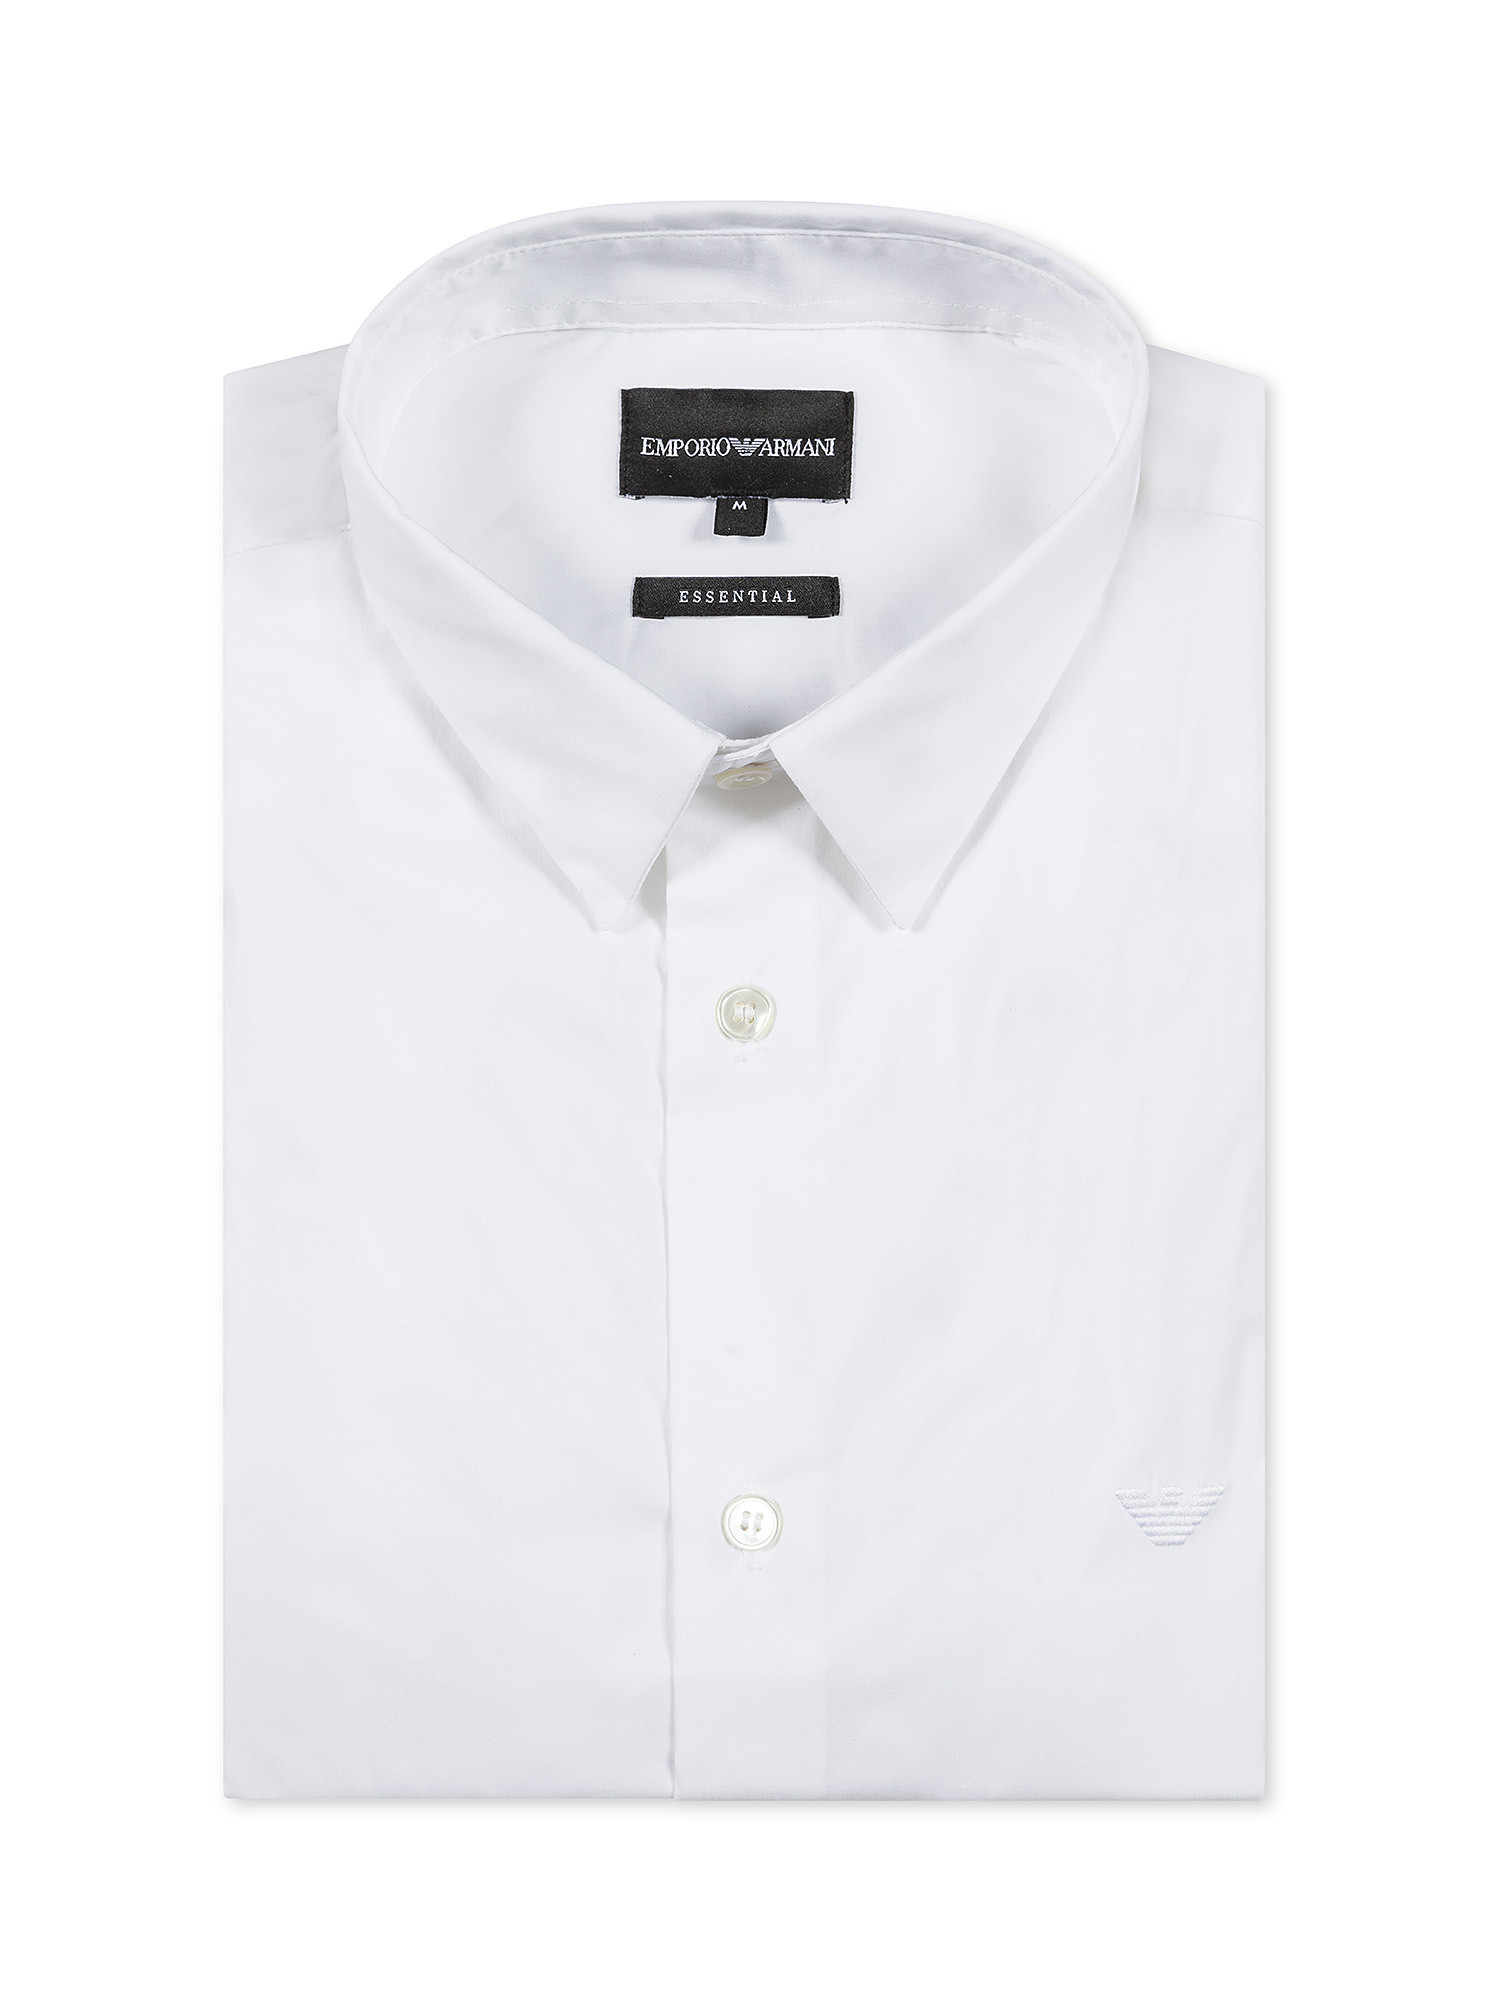 Emporio Armani - Camicia con logo ricamato, Bianco, large image number 0